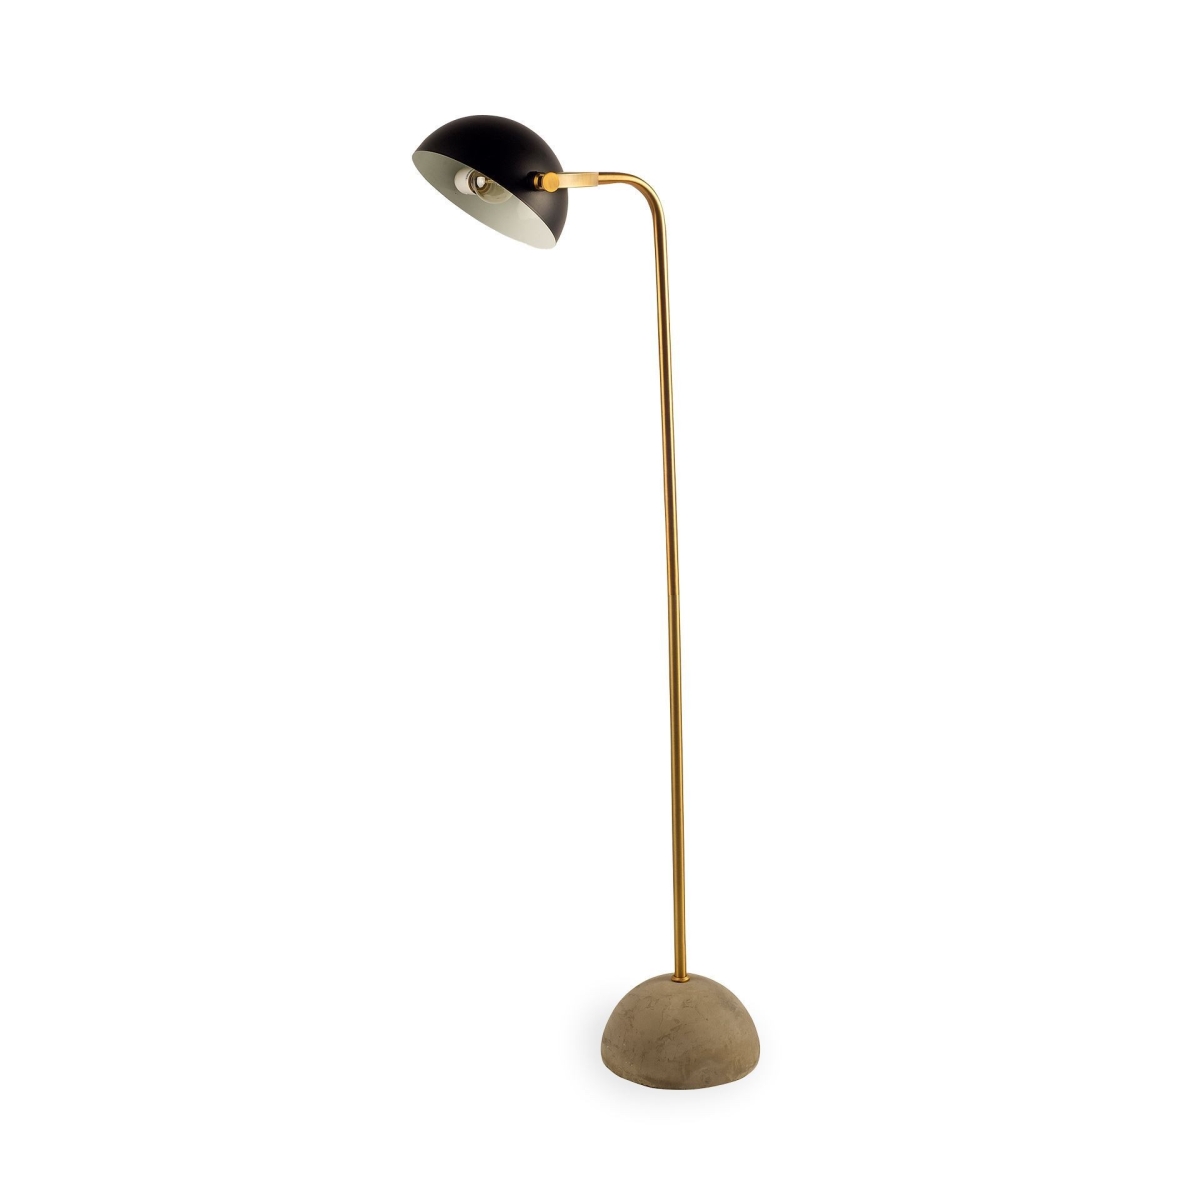 Estallar 55.12 x 10 x 18.9 in. Antiqued Gold Black & Concrete Floor Lamp